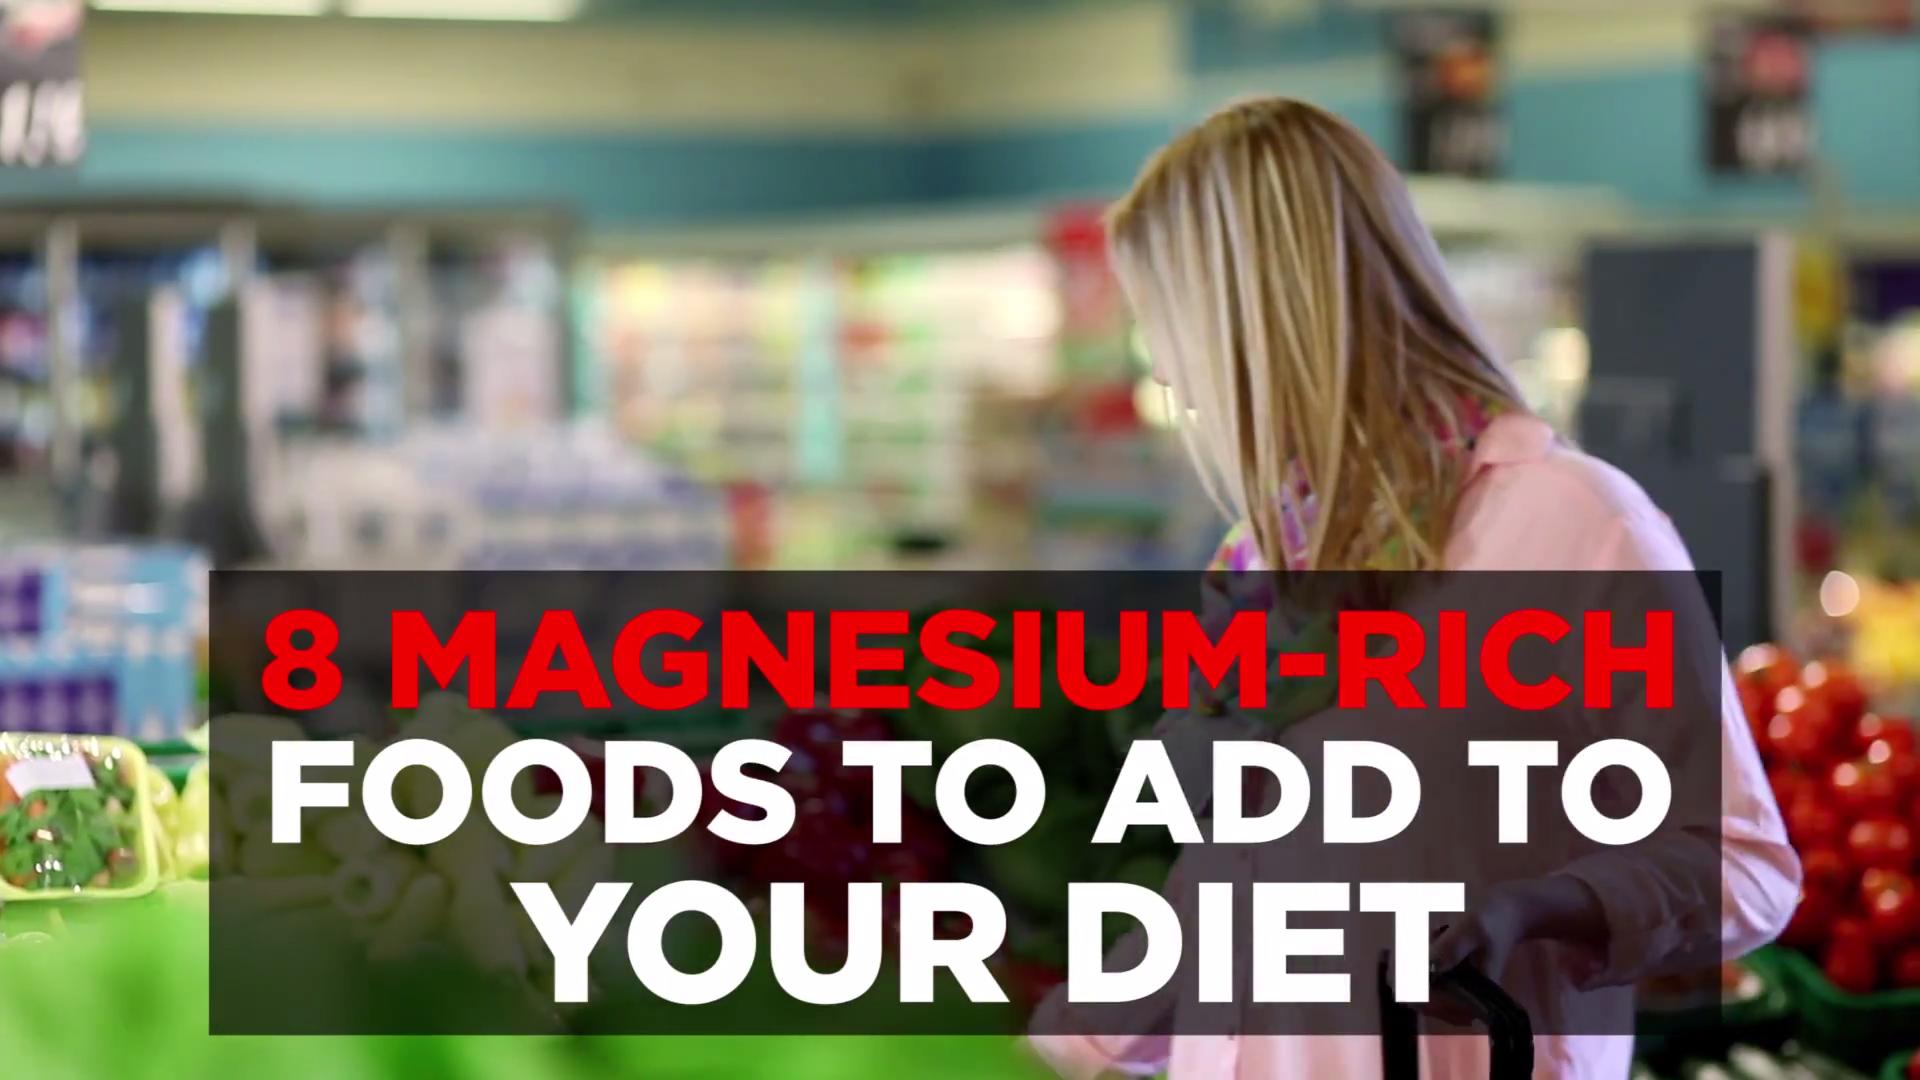 Magnesium and calcium